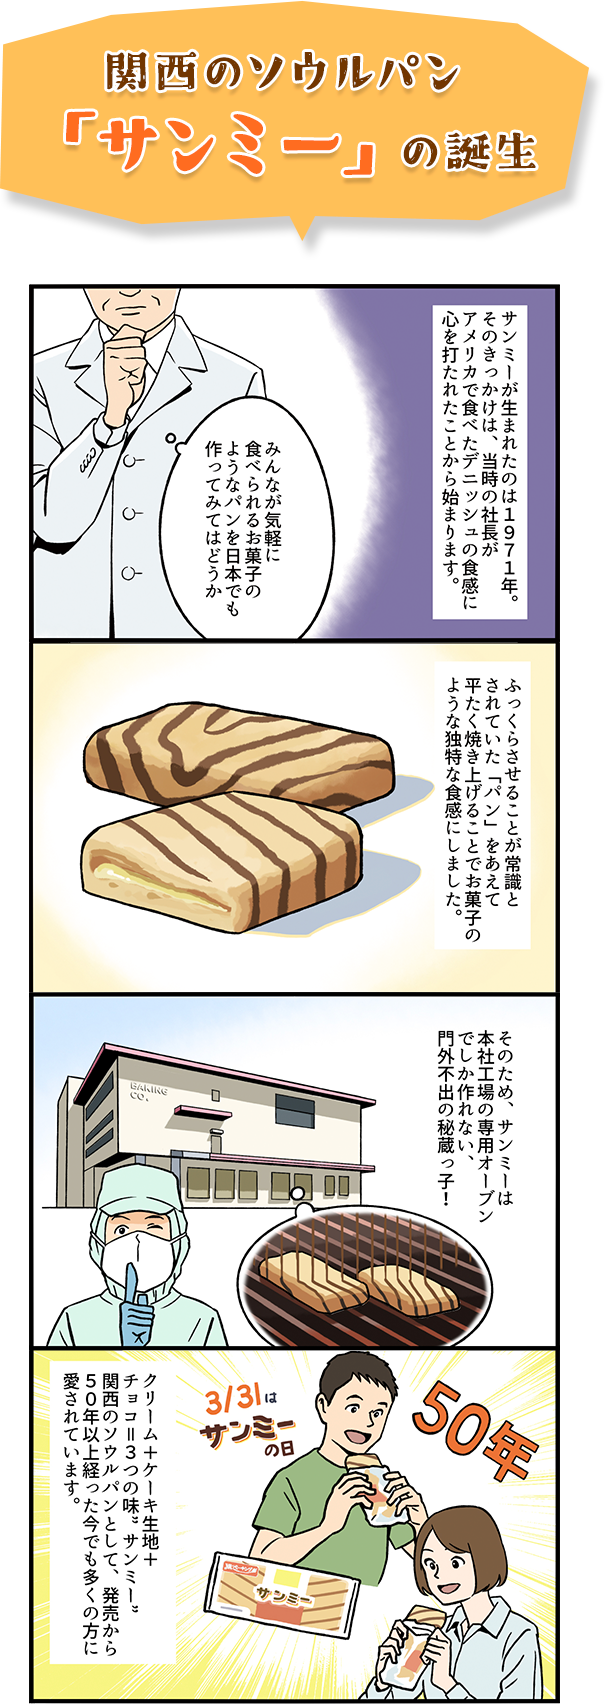 関西のソウルパン「サンミー」の誕生